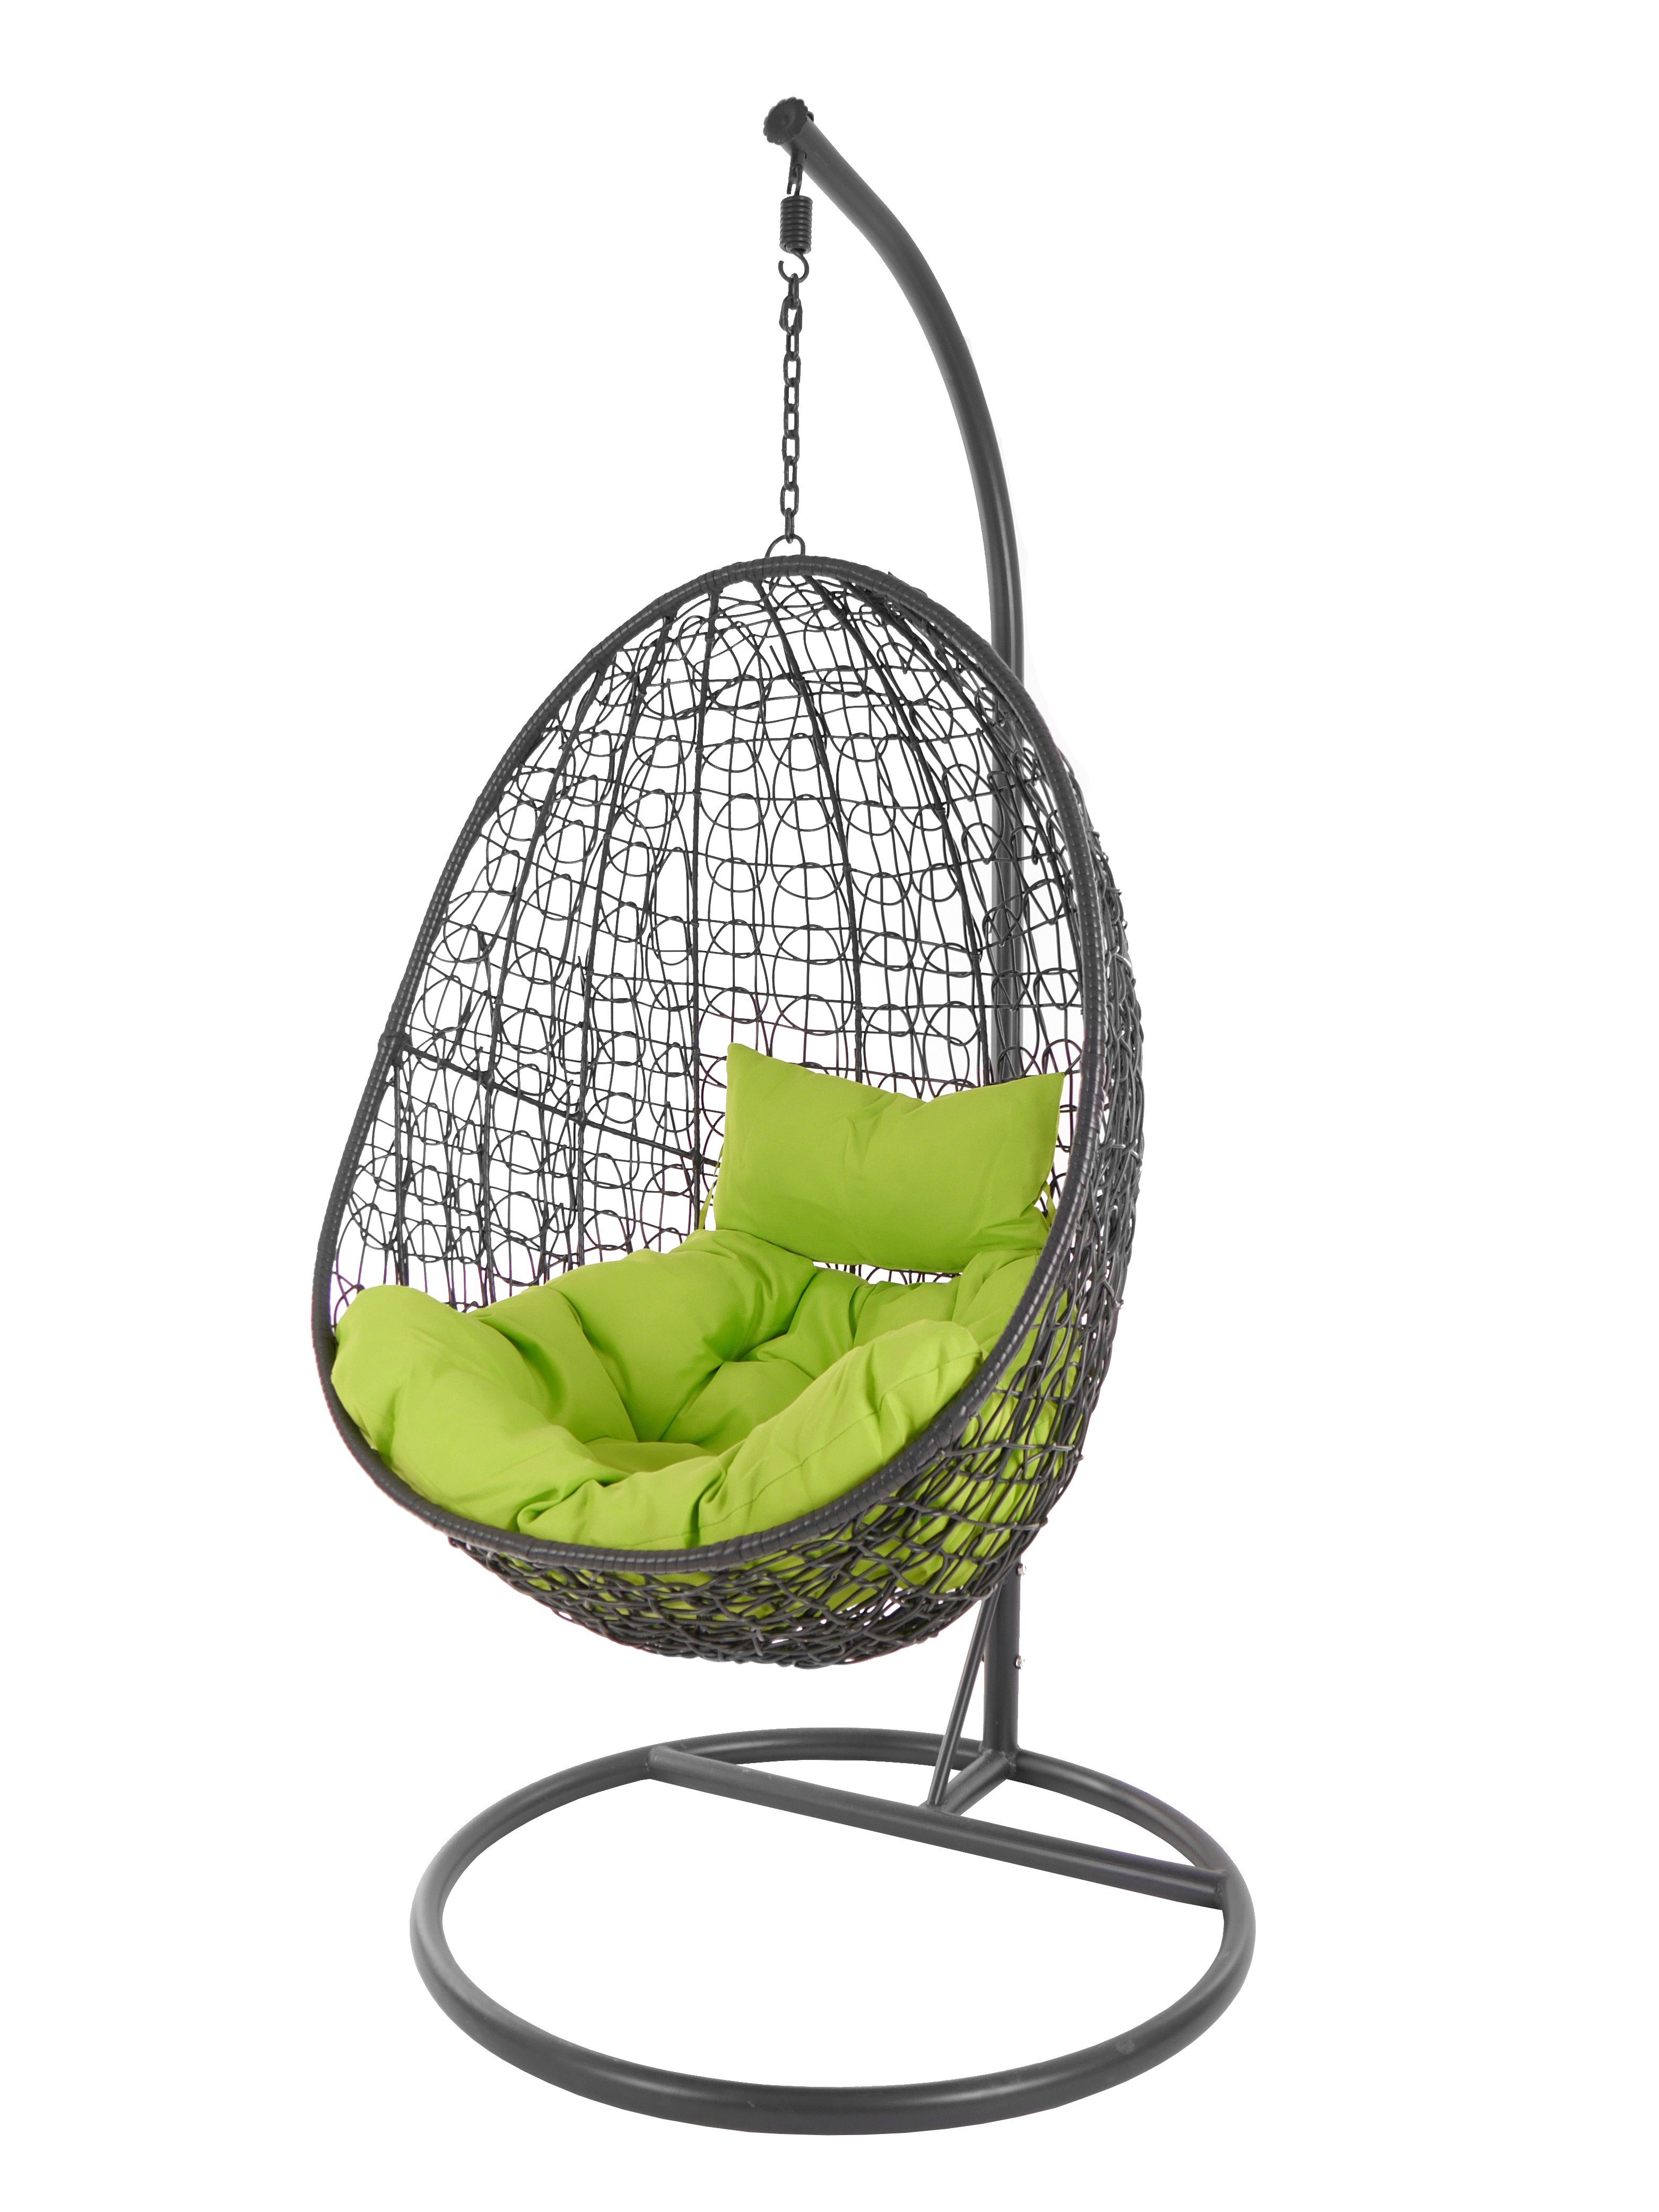 KIDEO Hängesessel Hängesessel Capdepera anthrazit, moderner Swing Chair, Schwebesessel mit Gestell und Kissen, Loungemöbel apfelgrün (6068 apple green)